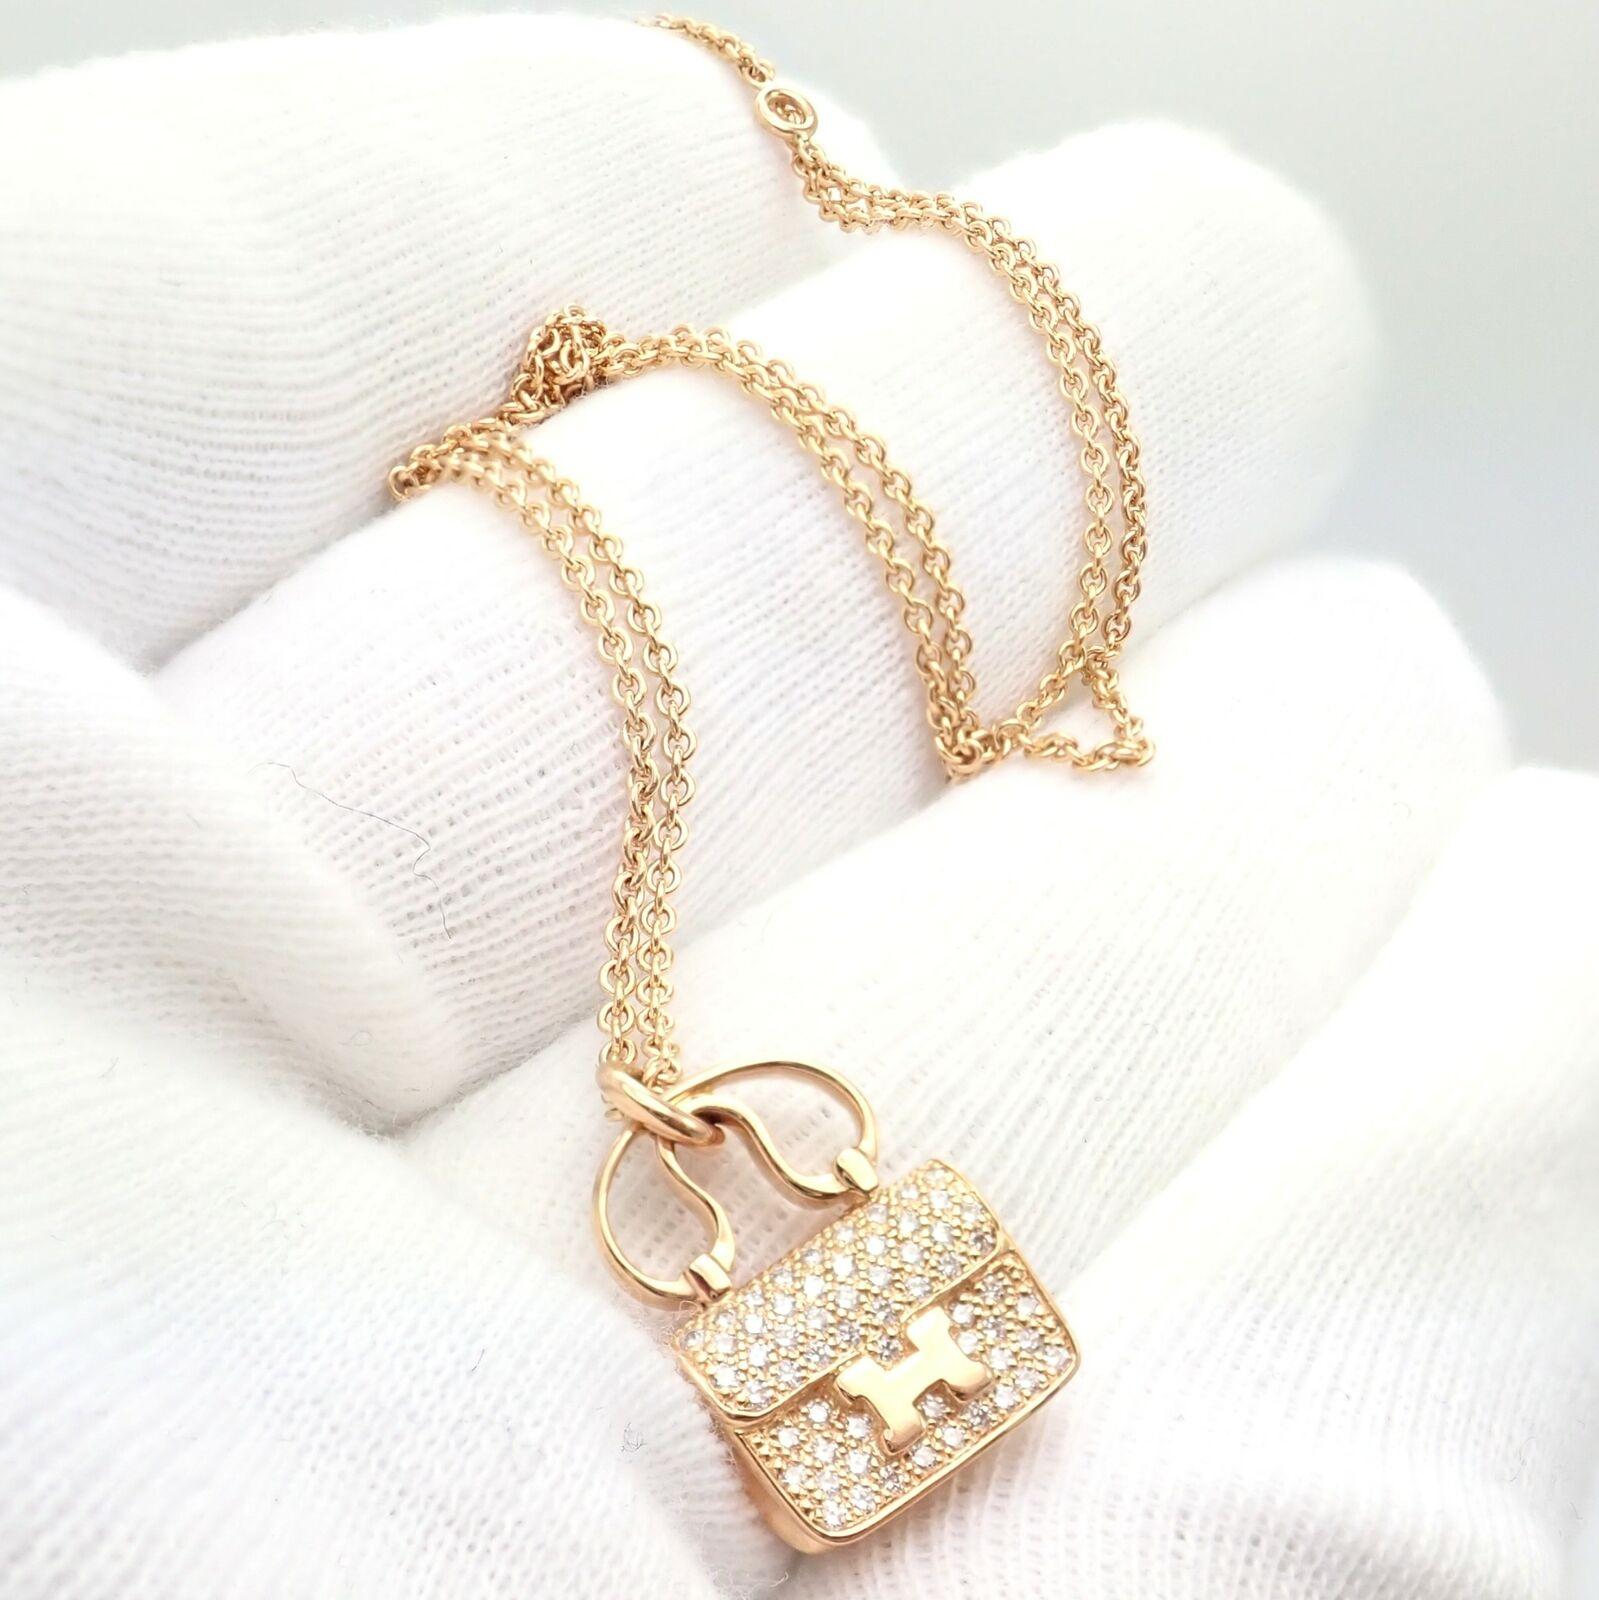 Hermes Diamond Constance Amulette Rose Gold Pendant Necklace For Sale 2